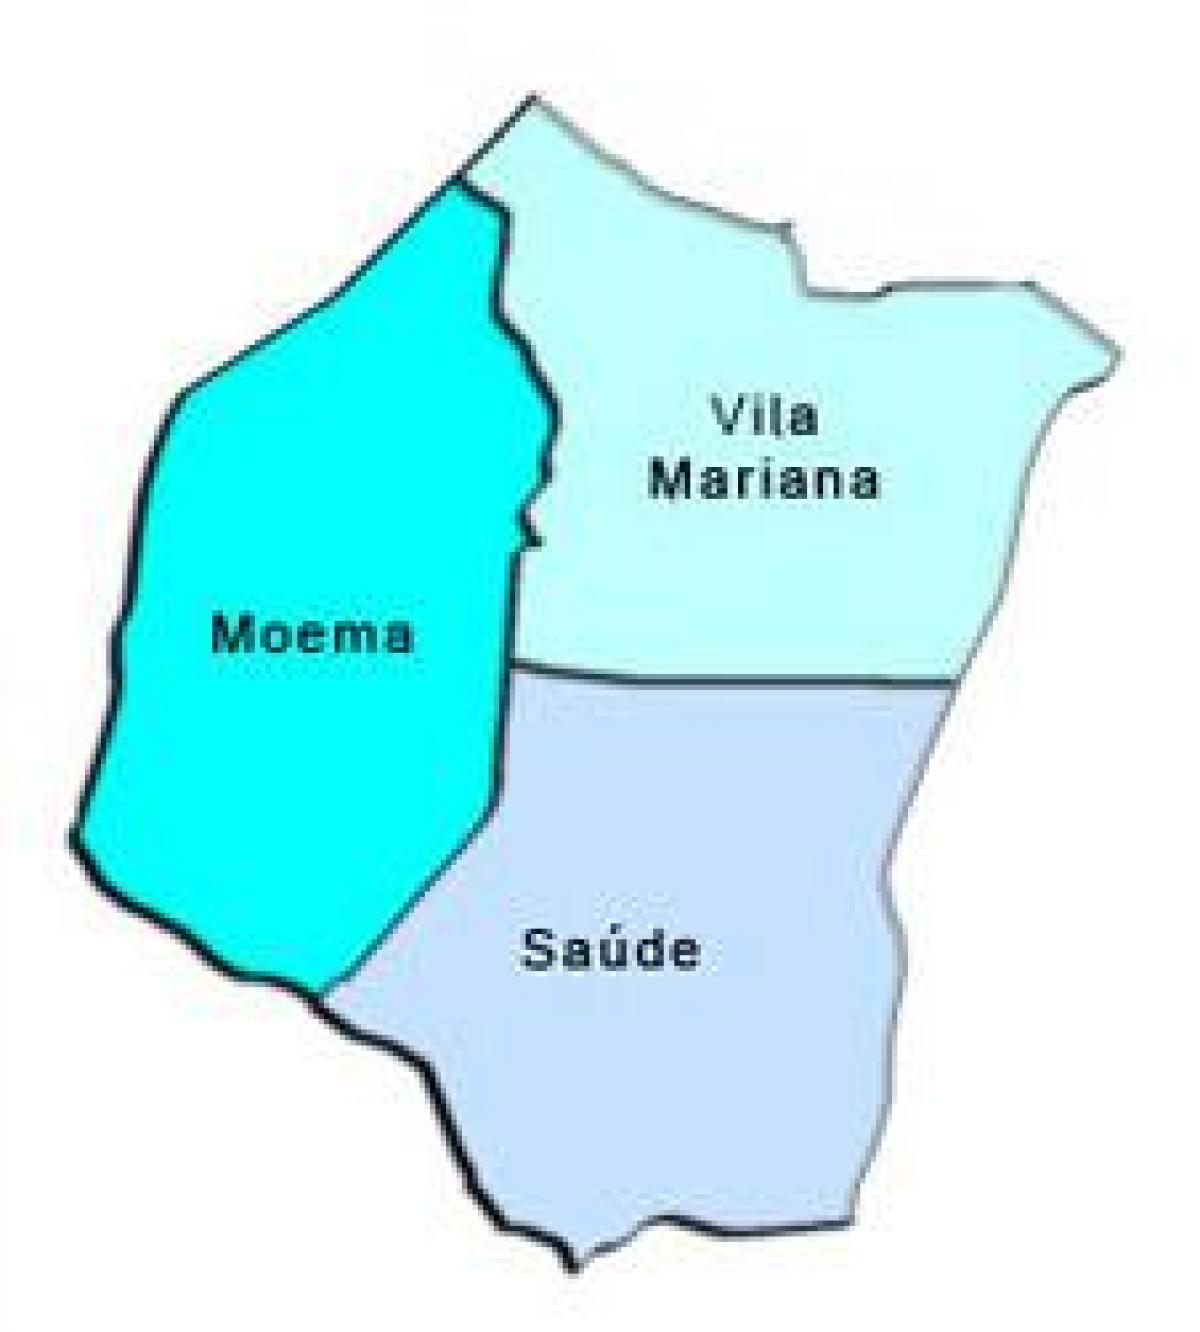 Map of Vila Mariana sub-prefecture